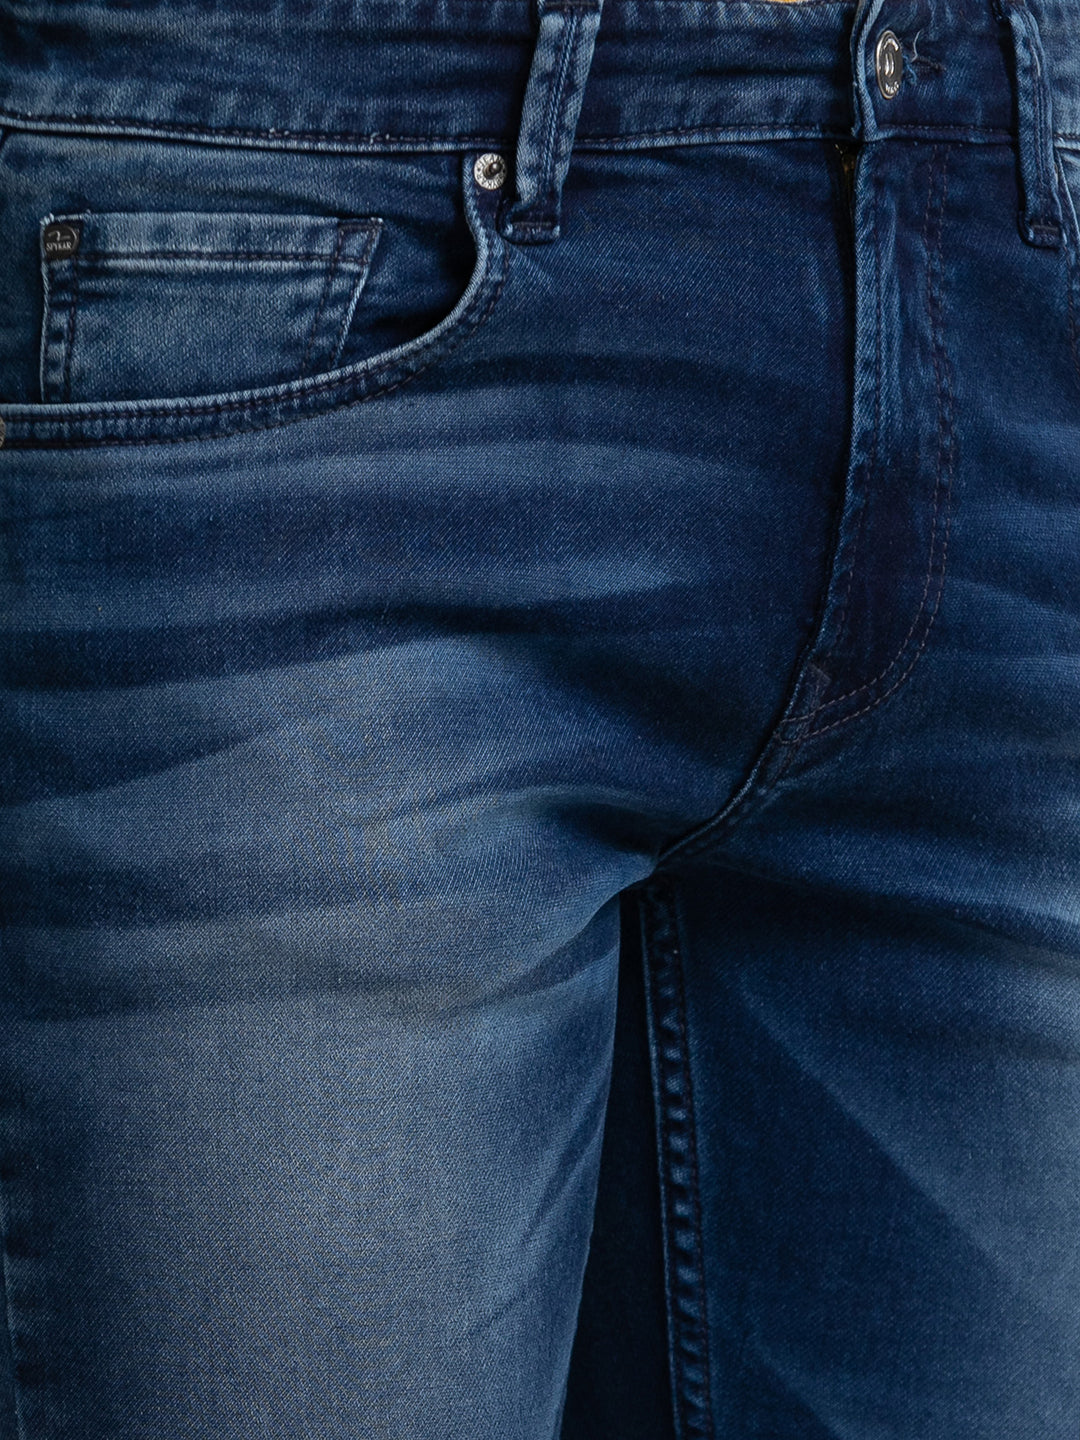 Spykar Blue Indigo Cotton Regular Fit Narrow Length Jeans For Men (Rover)